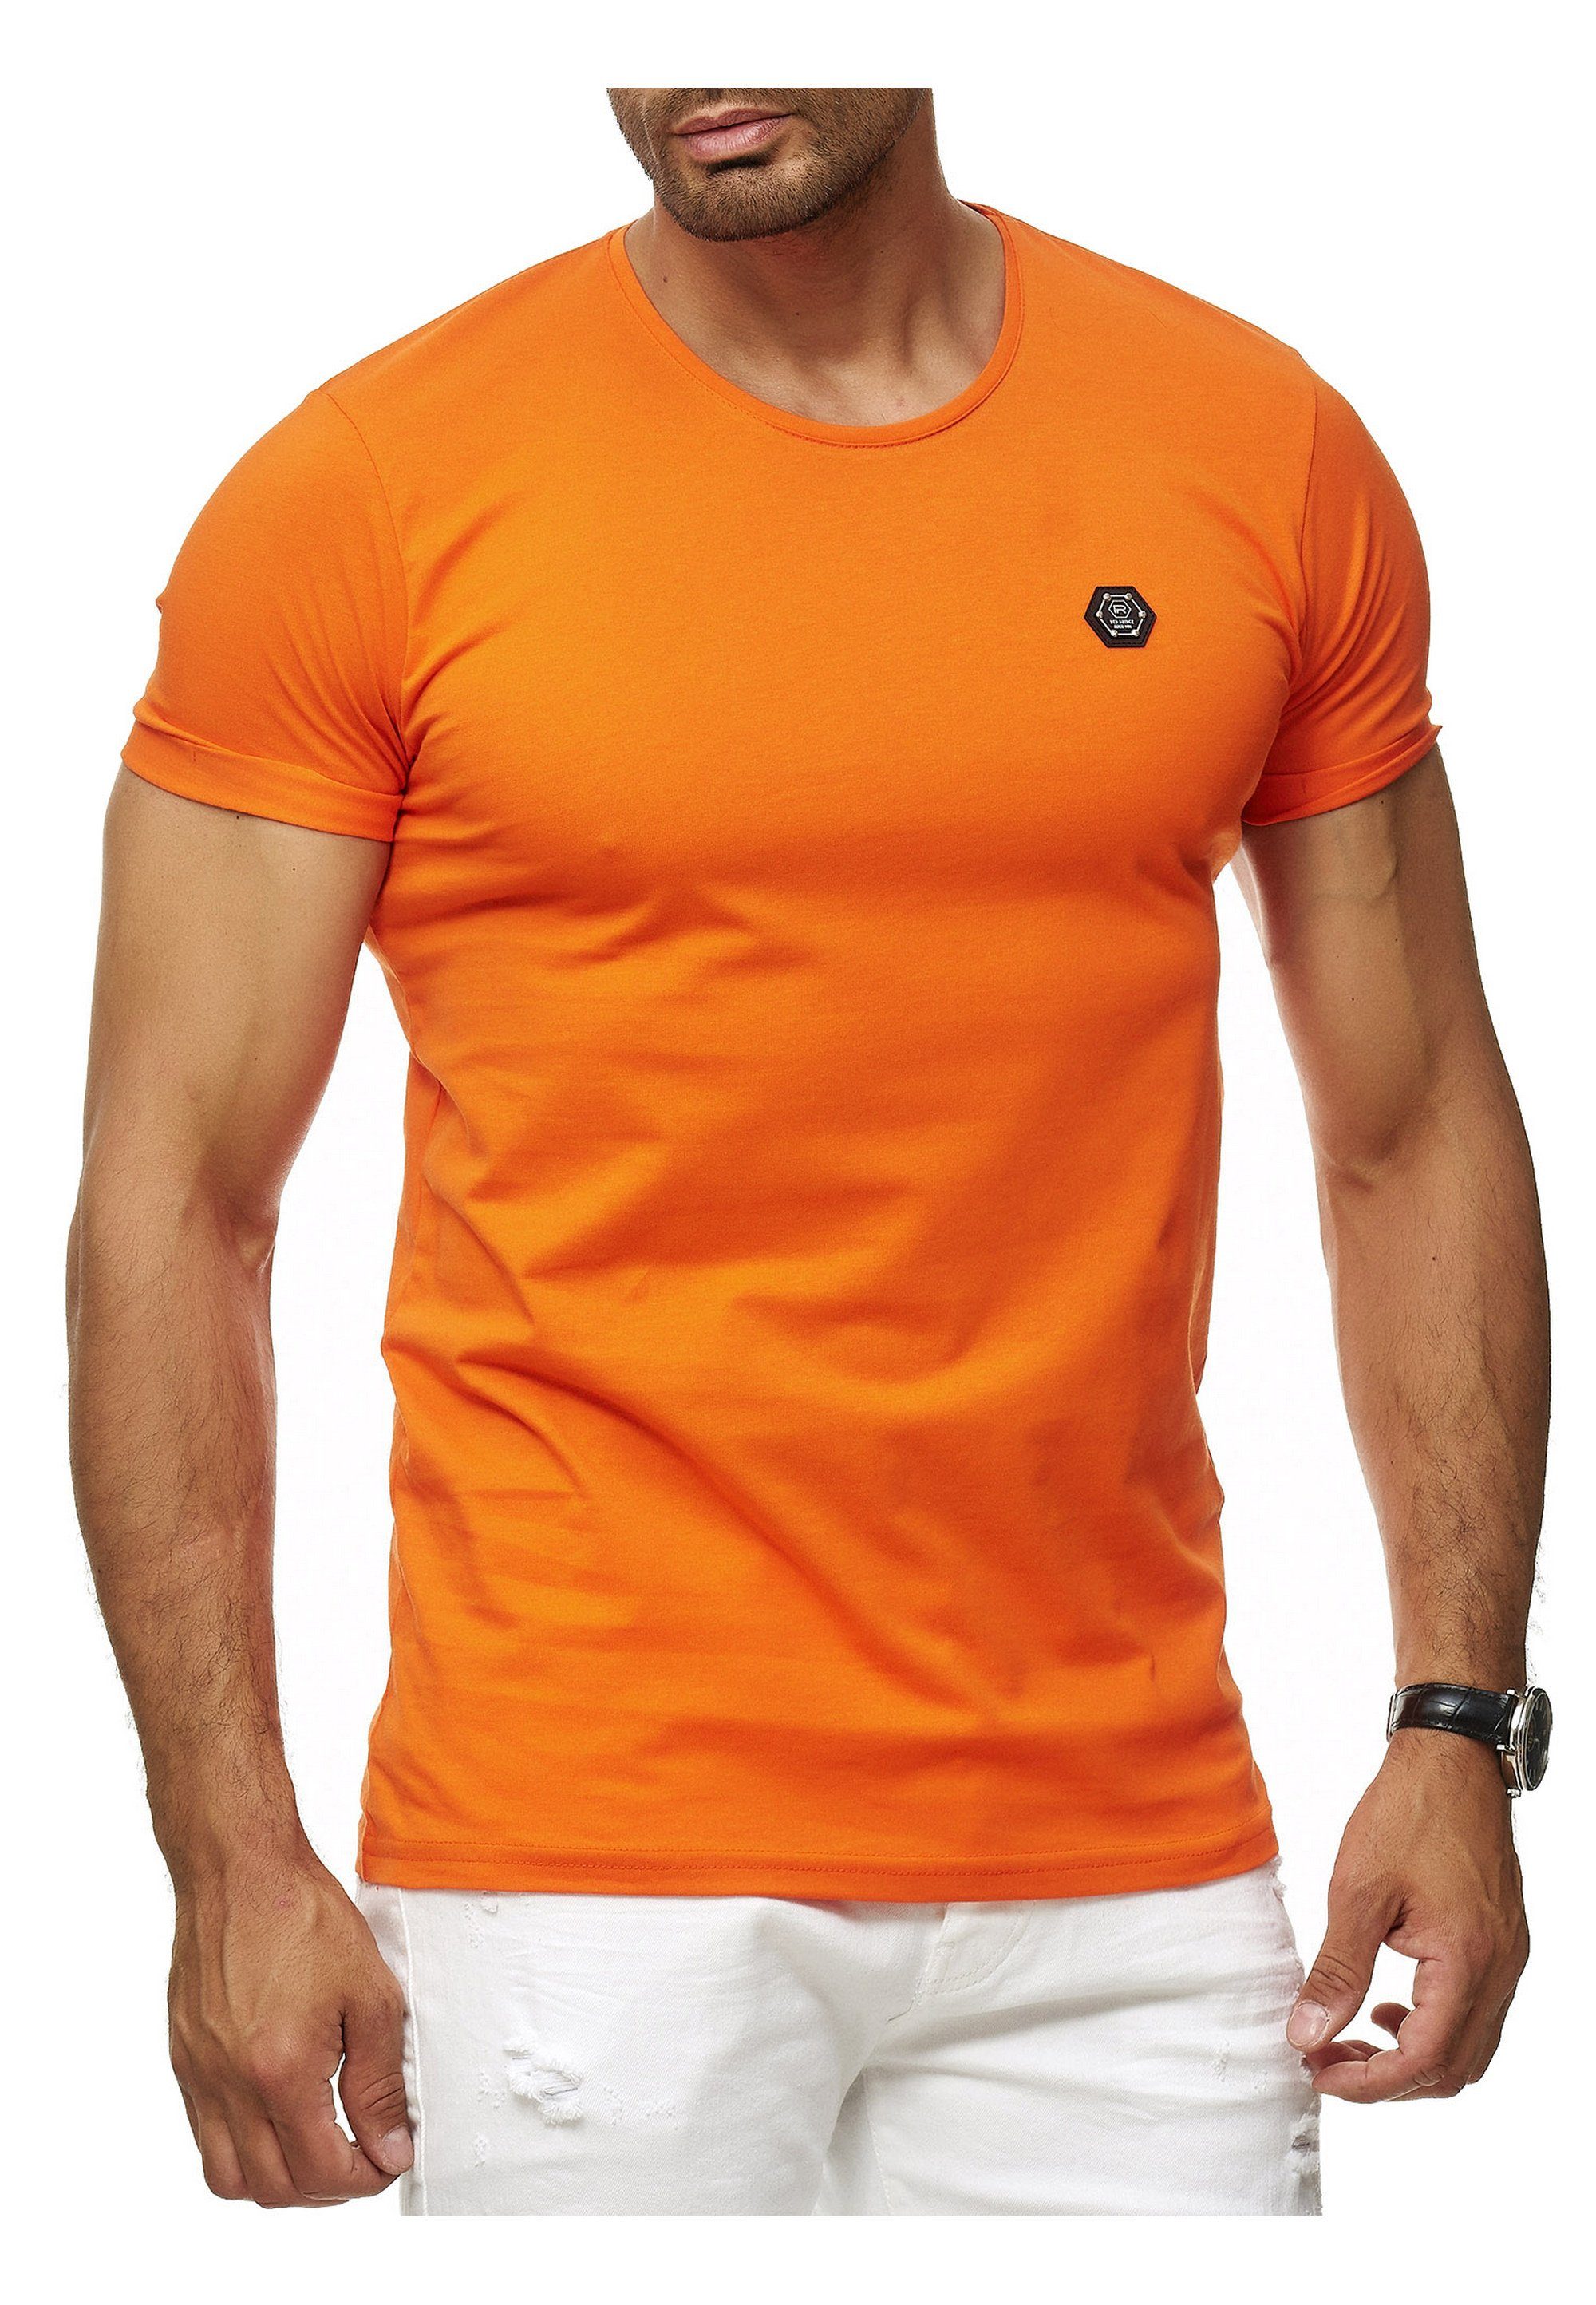 Atlanta RedBridge Brandlogo mit orange T-Shirt sportlichem